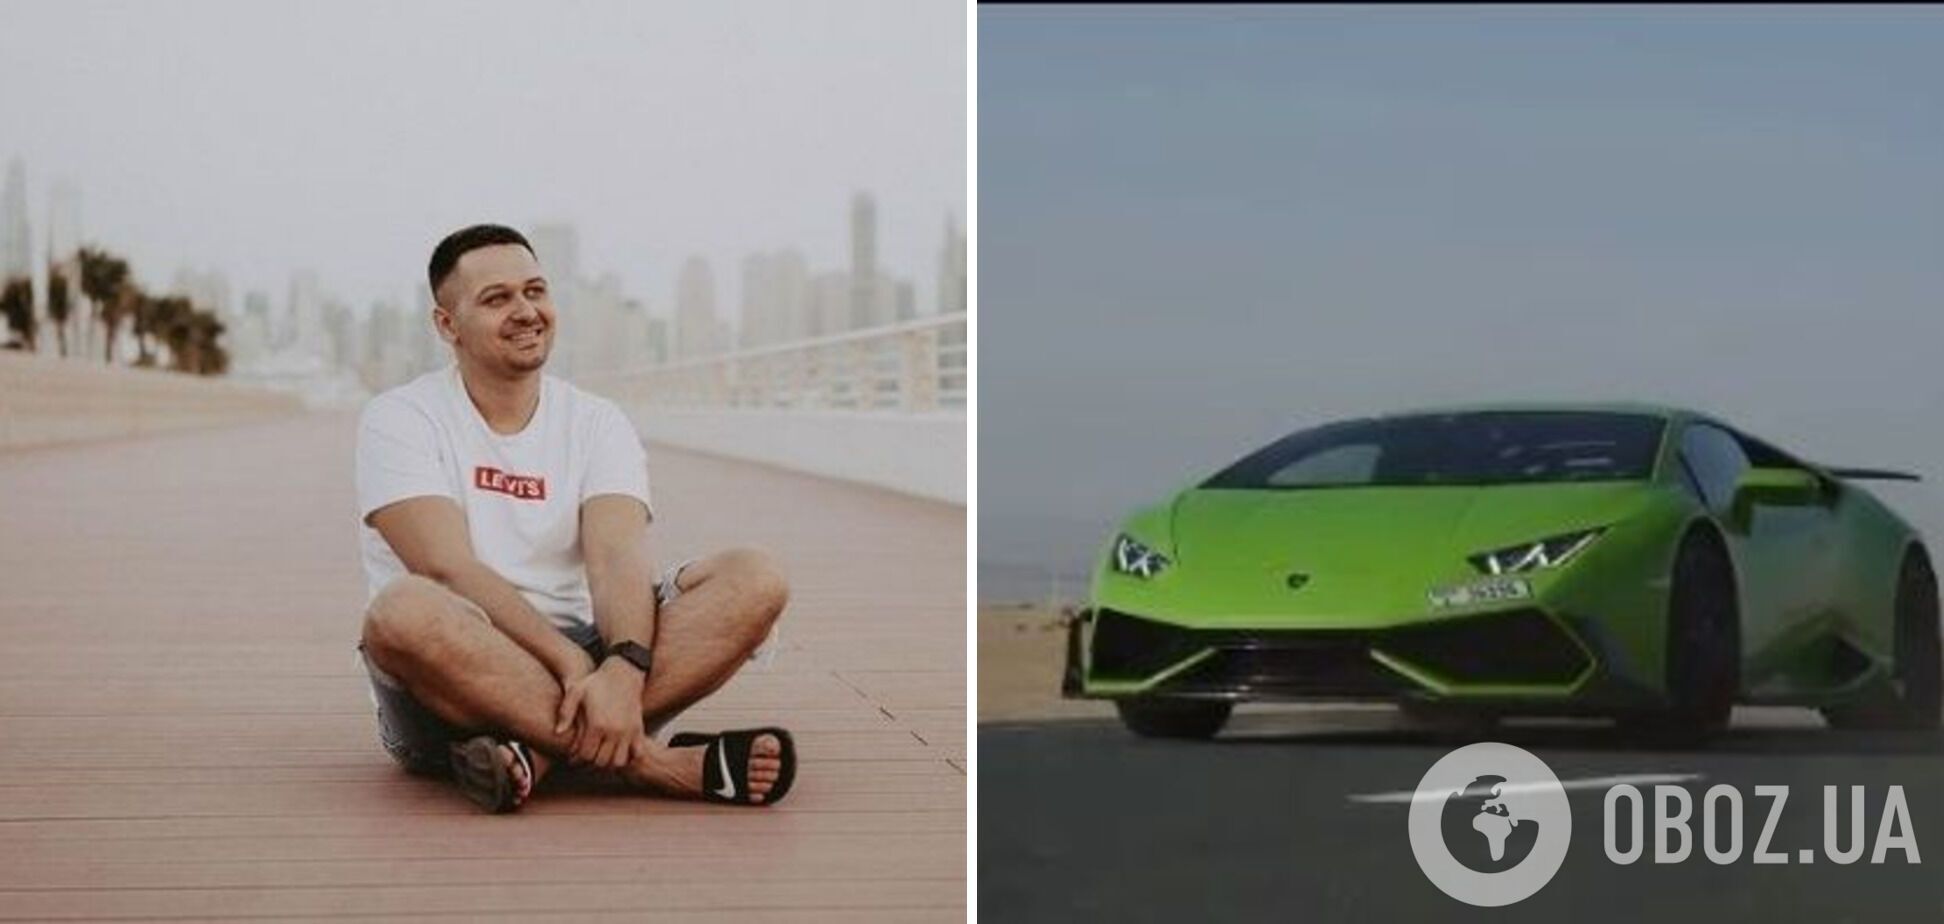 Александр Мицкан арендовал Lamborghini и застрял в Дубае.